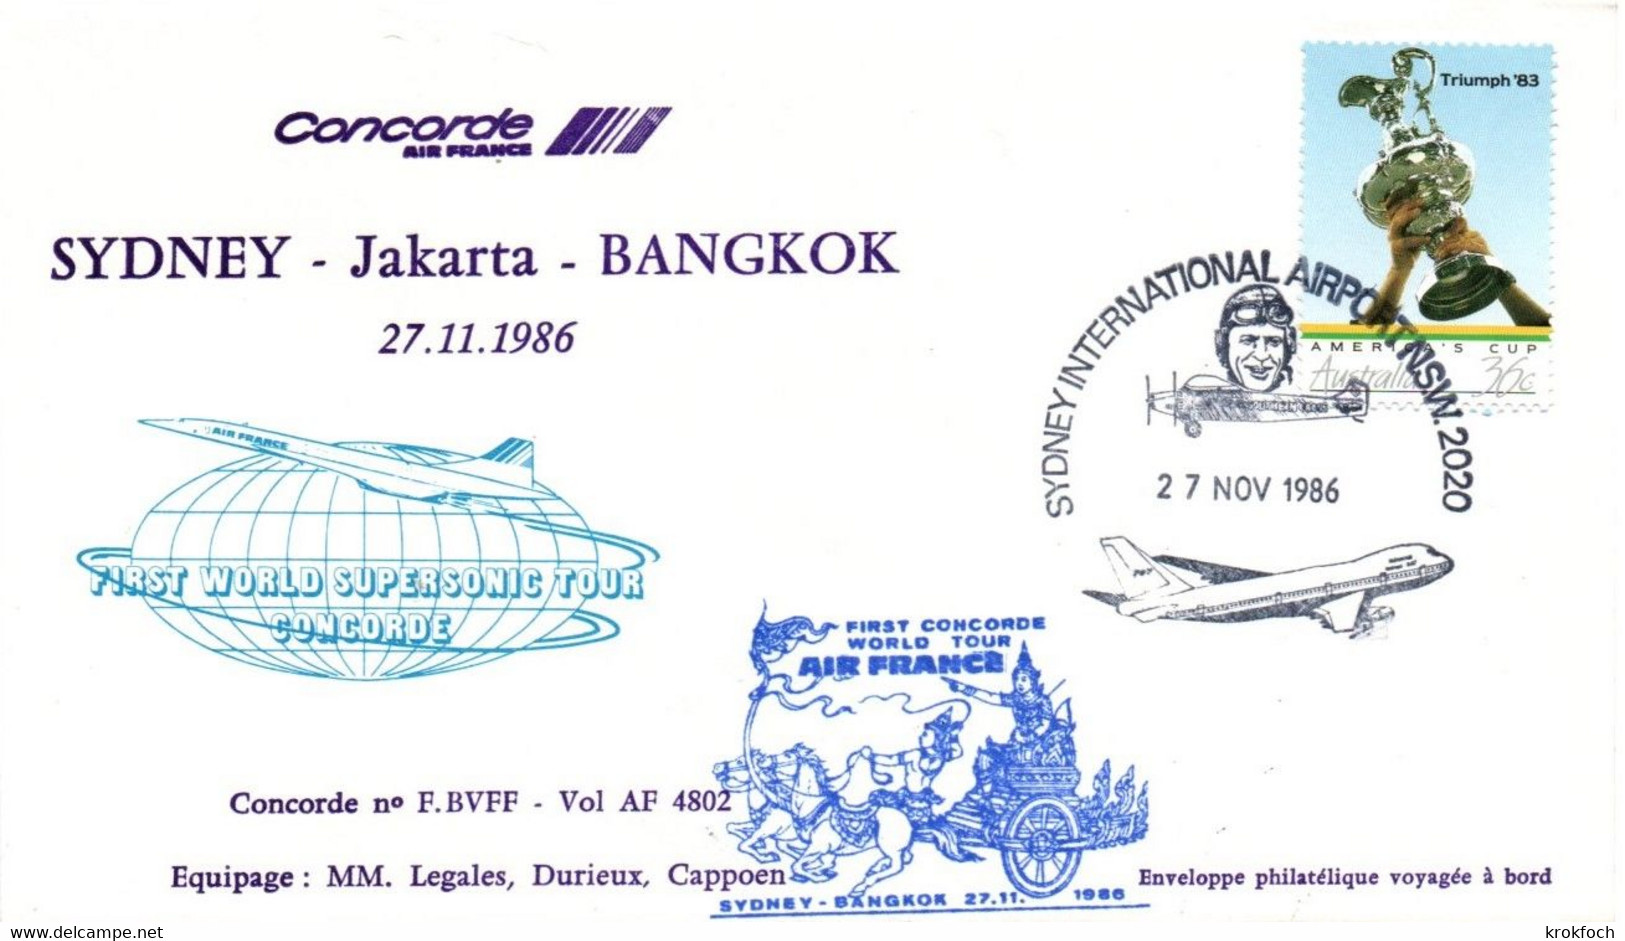 Concorde Air France 1986 - Sydney Jakarta Bangkok - Tour Du Monde American Express - 1er Vol Erstflug Flight - Premiers Vols